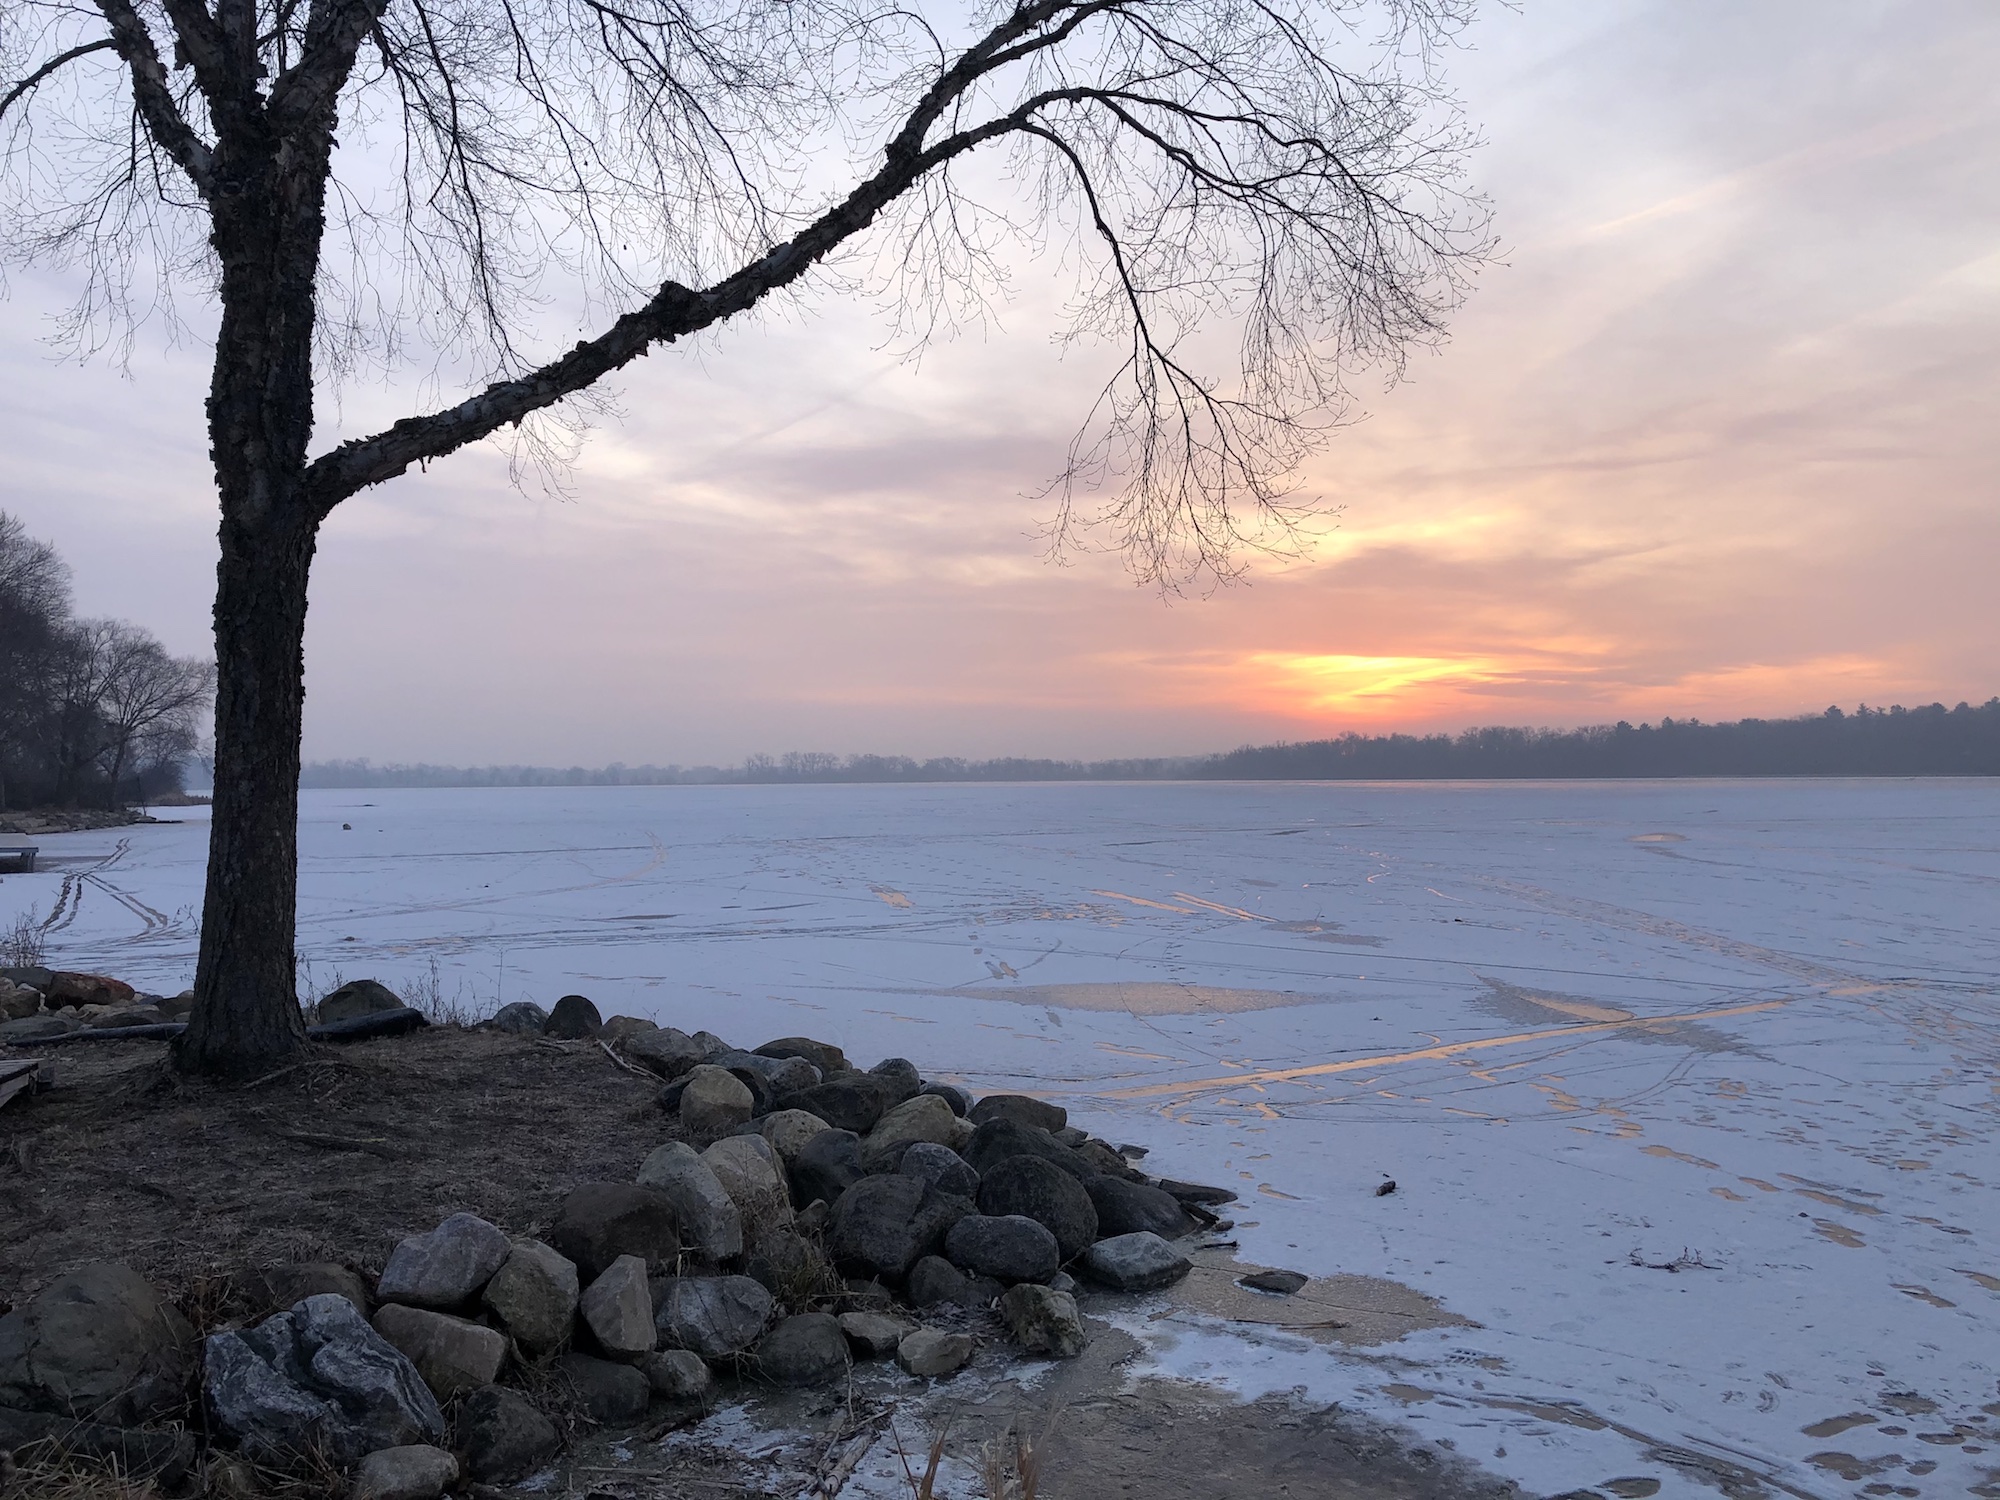 Lake Wingra on December 20, 2019.